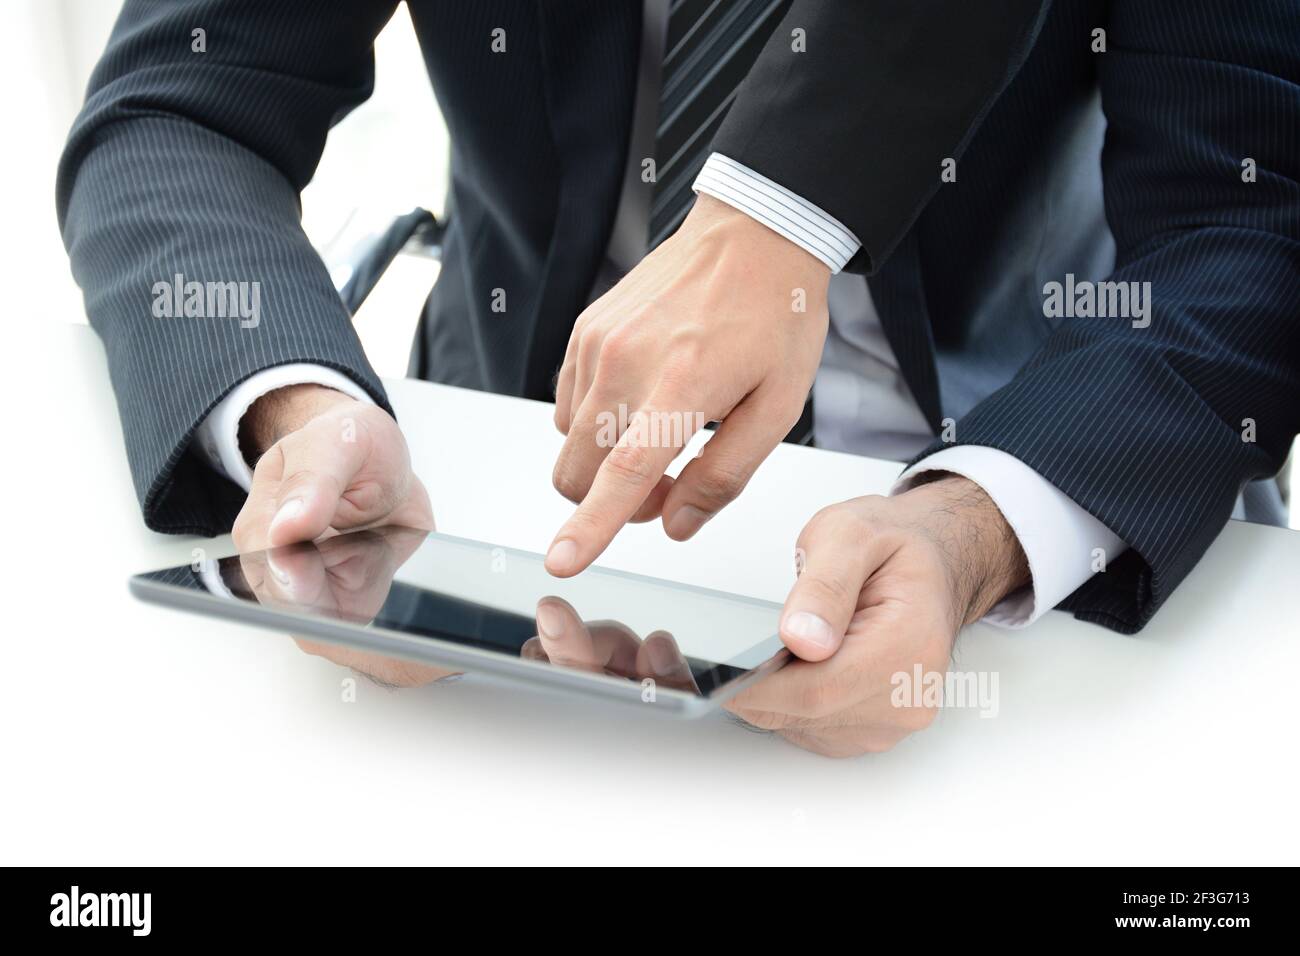 Deux hommes d'affaires utilisant une tablette informatique avec une main écran tactile - concept de discussion d'affaires Banque D'Images